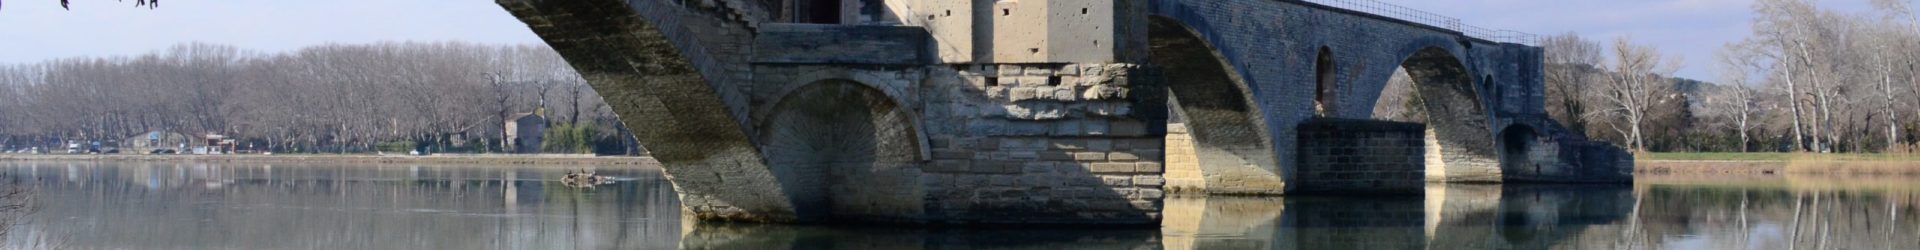 Une journée à Avignon : on y danse sur le pont ?